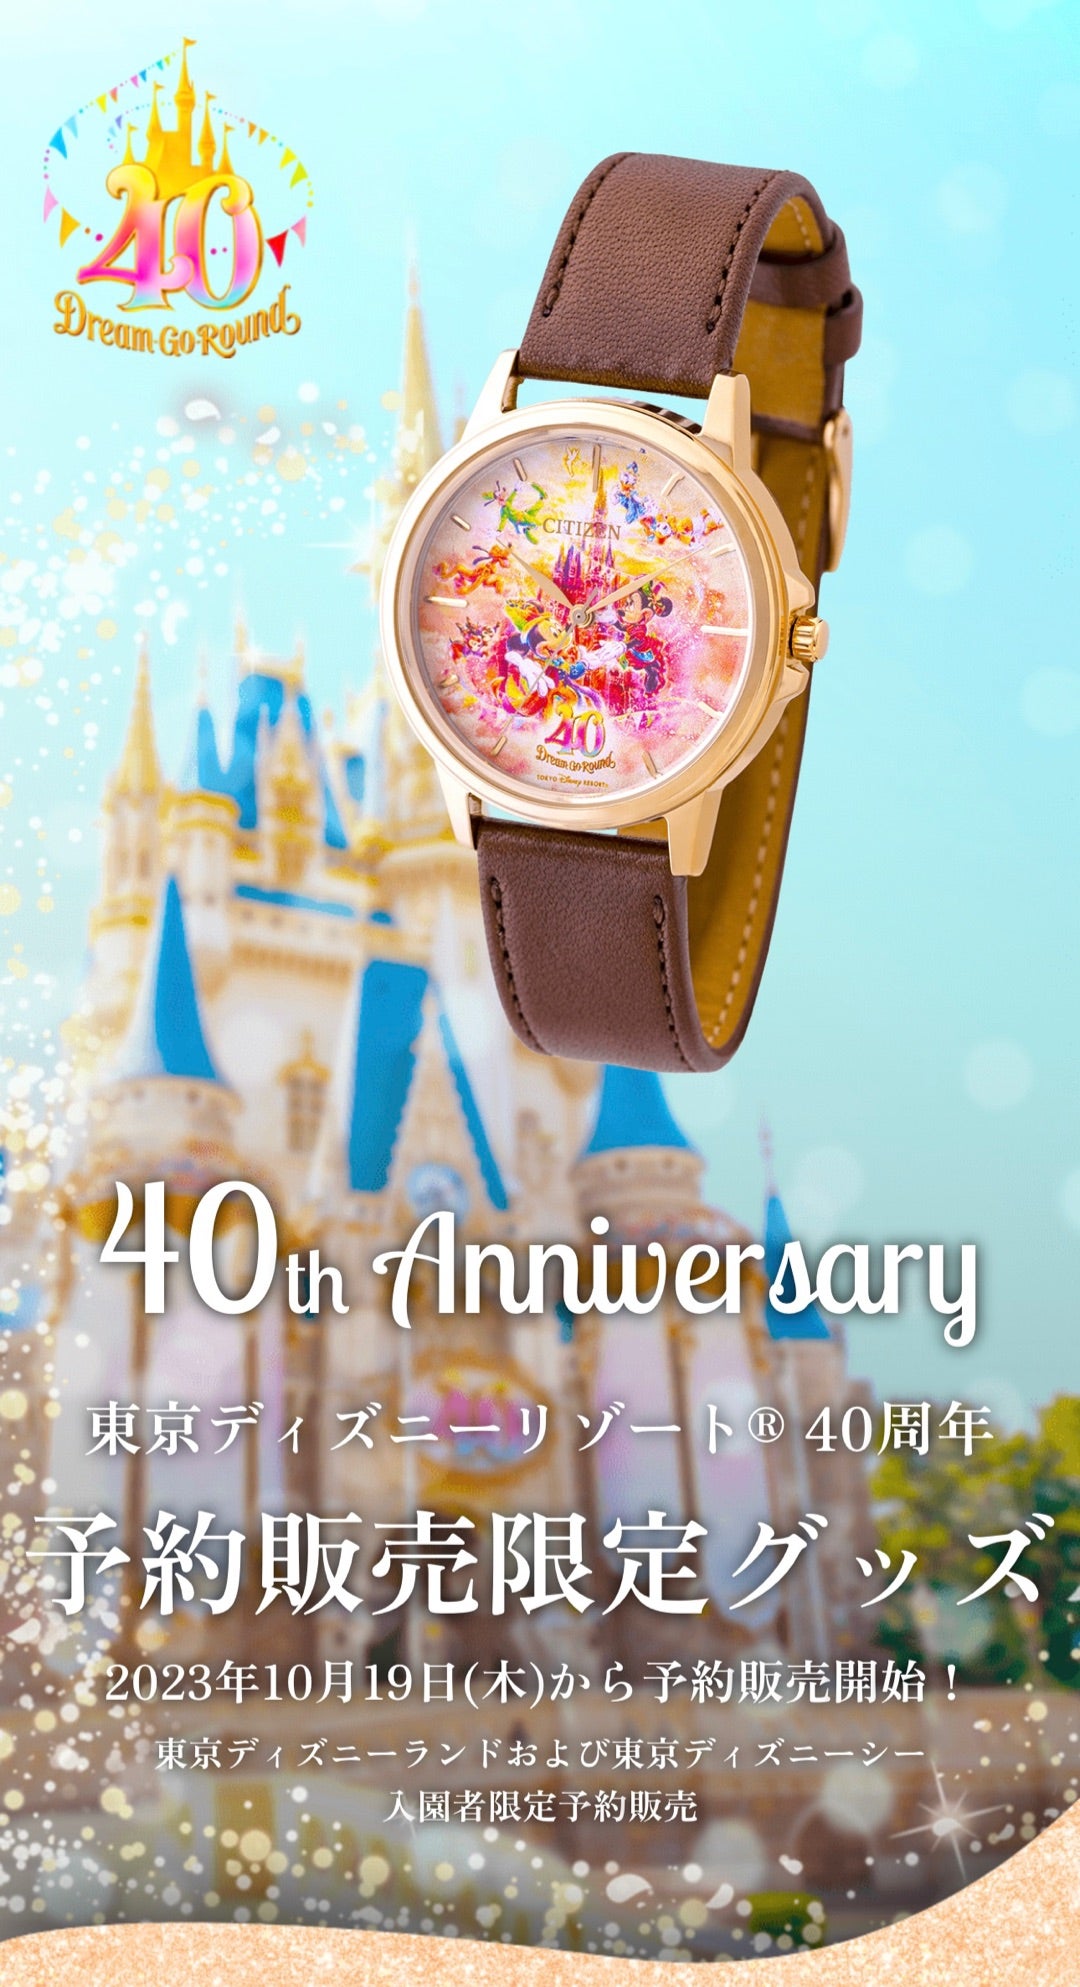 ディズニー 40周年 時計ディズニーリゾート - 腕時計(アナログ)